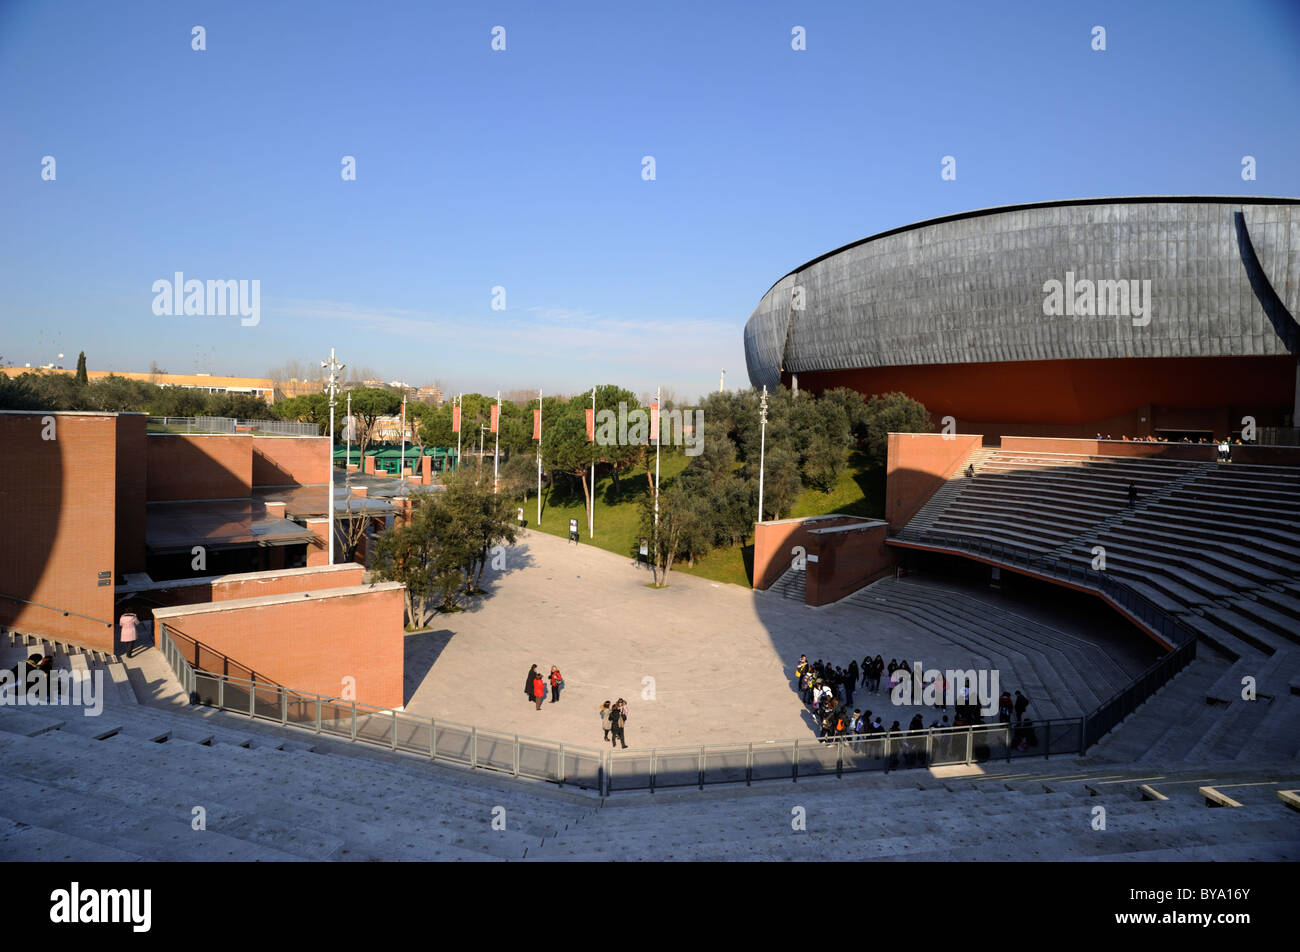 Italy, Rome, Auditorium Parco della Musica, architect Renzo Piano Stock Photo